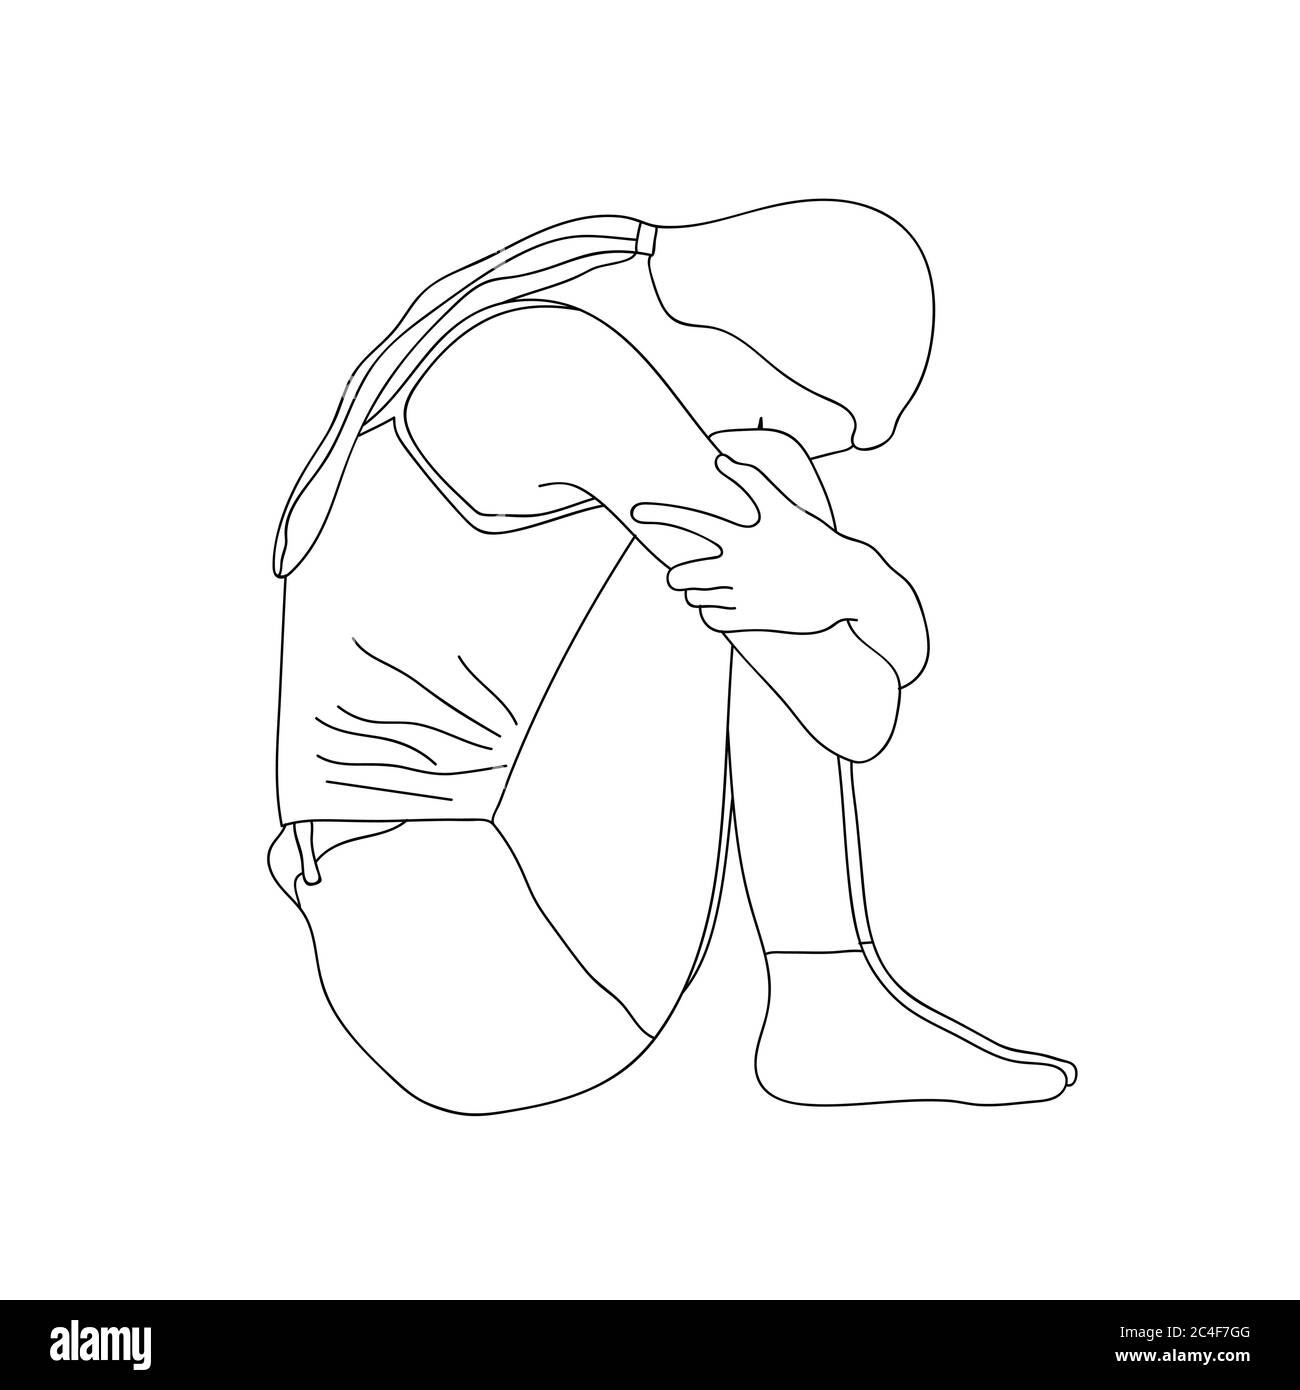 Skizze eines traurigen einsamen jungen Mädchens, das auf dem Boden sitzt und ihre Knie mit geneigtem Kopf umarmt. Vektorgrafik. Stock Vektor